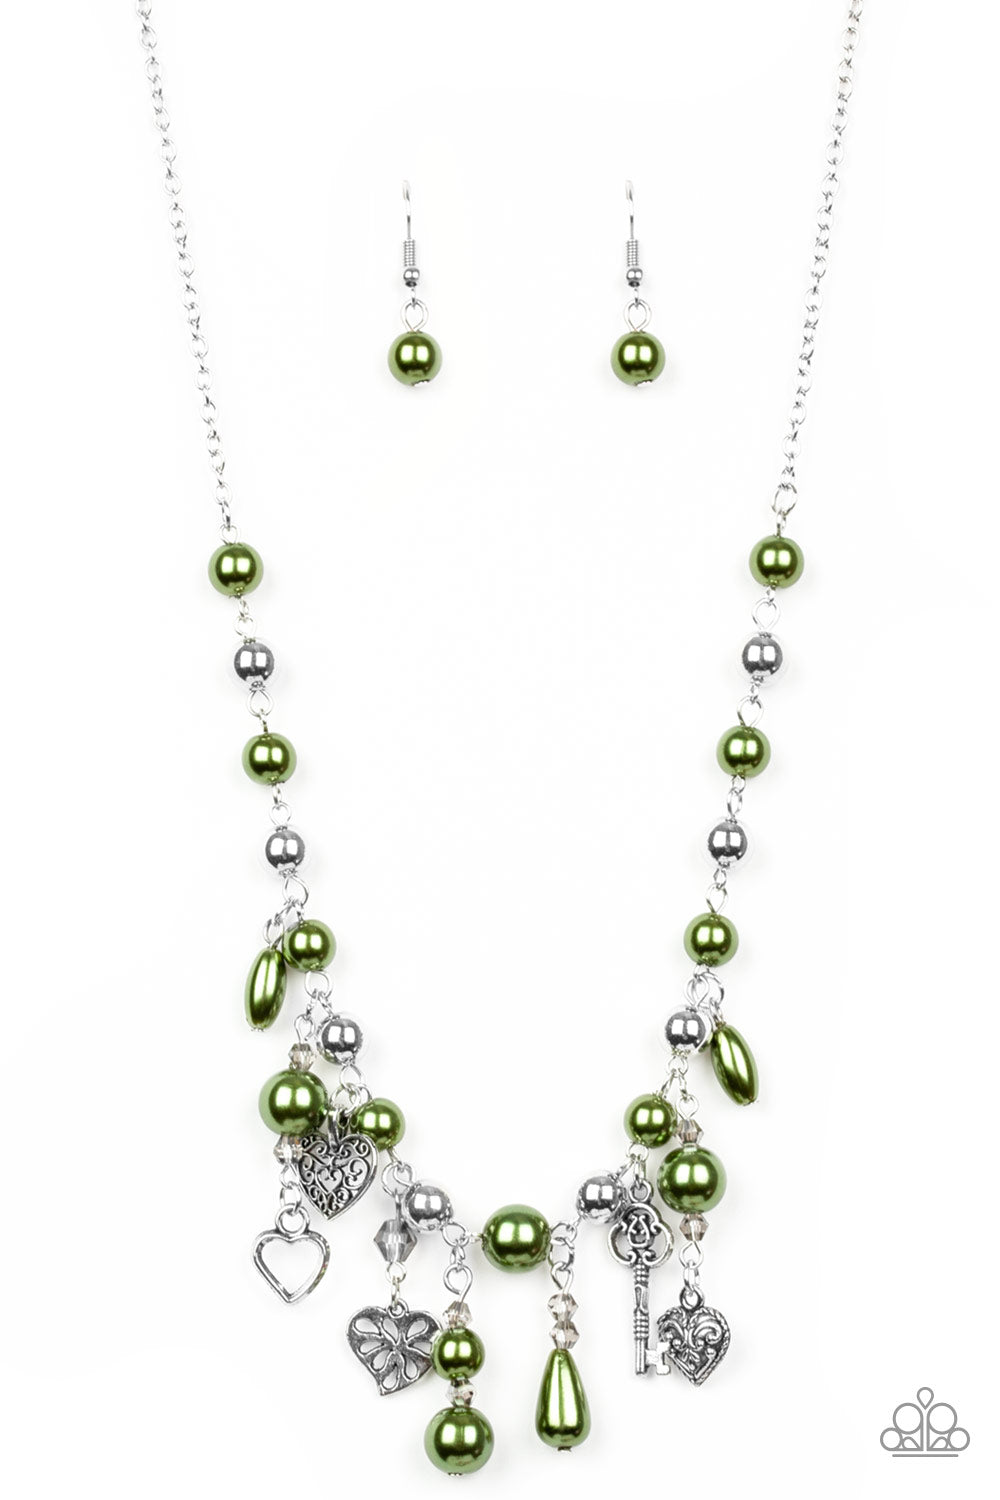 Renaissance Romance - Green necklace